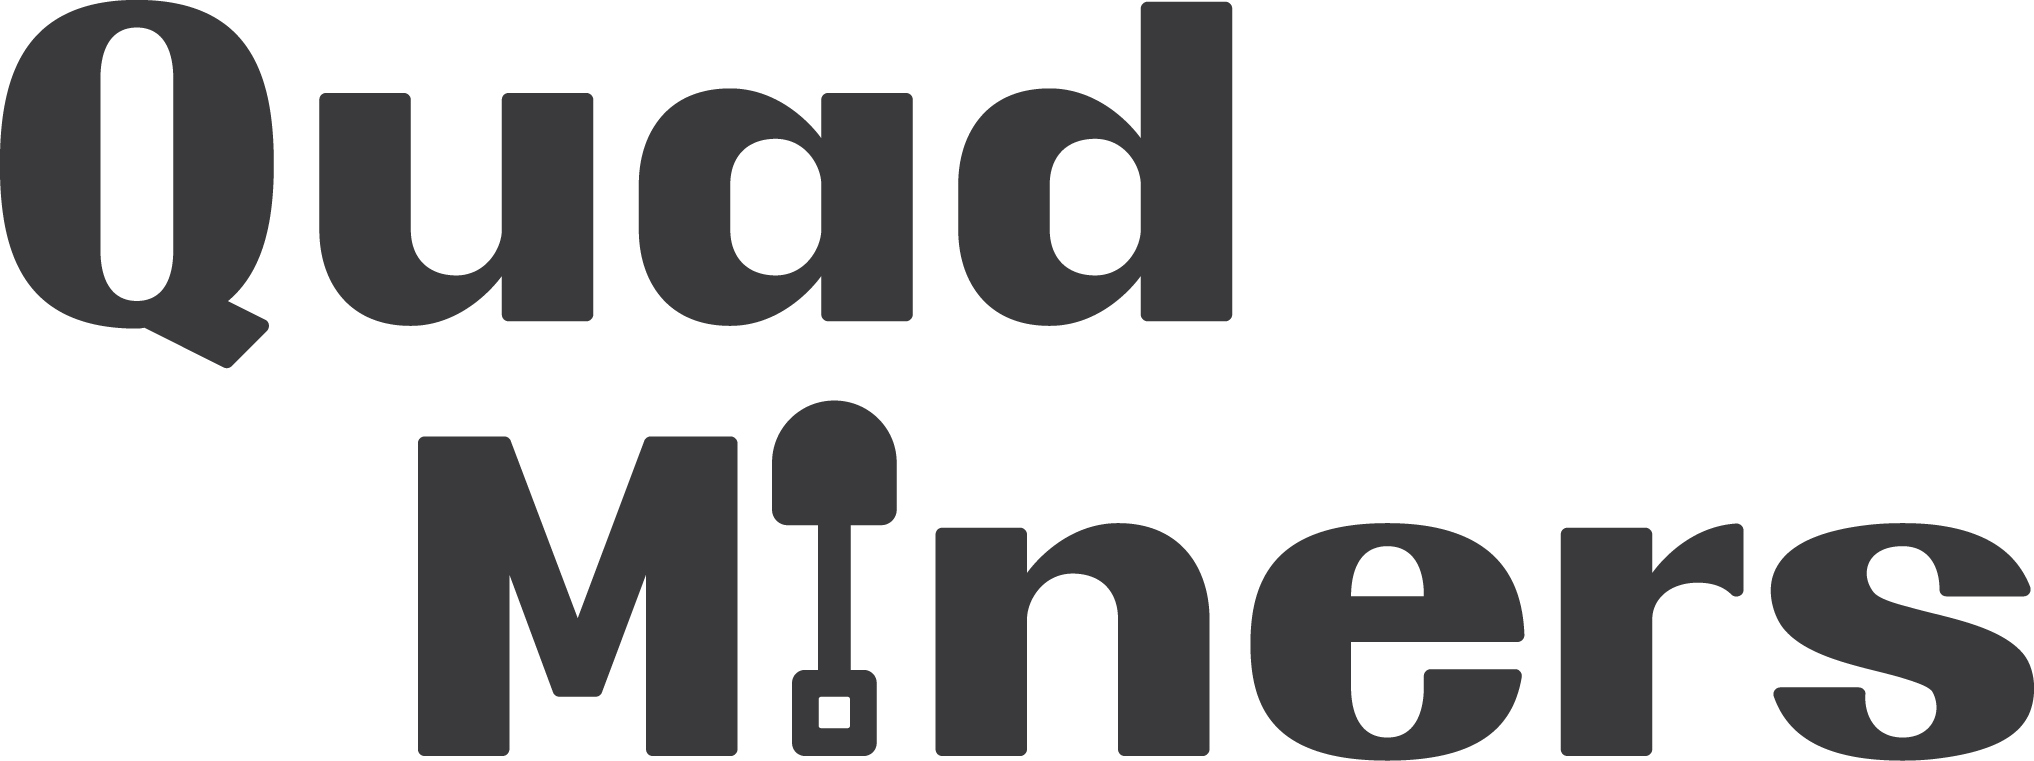 Quad Miners logo